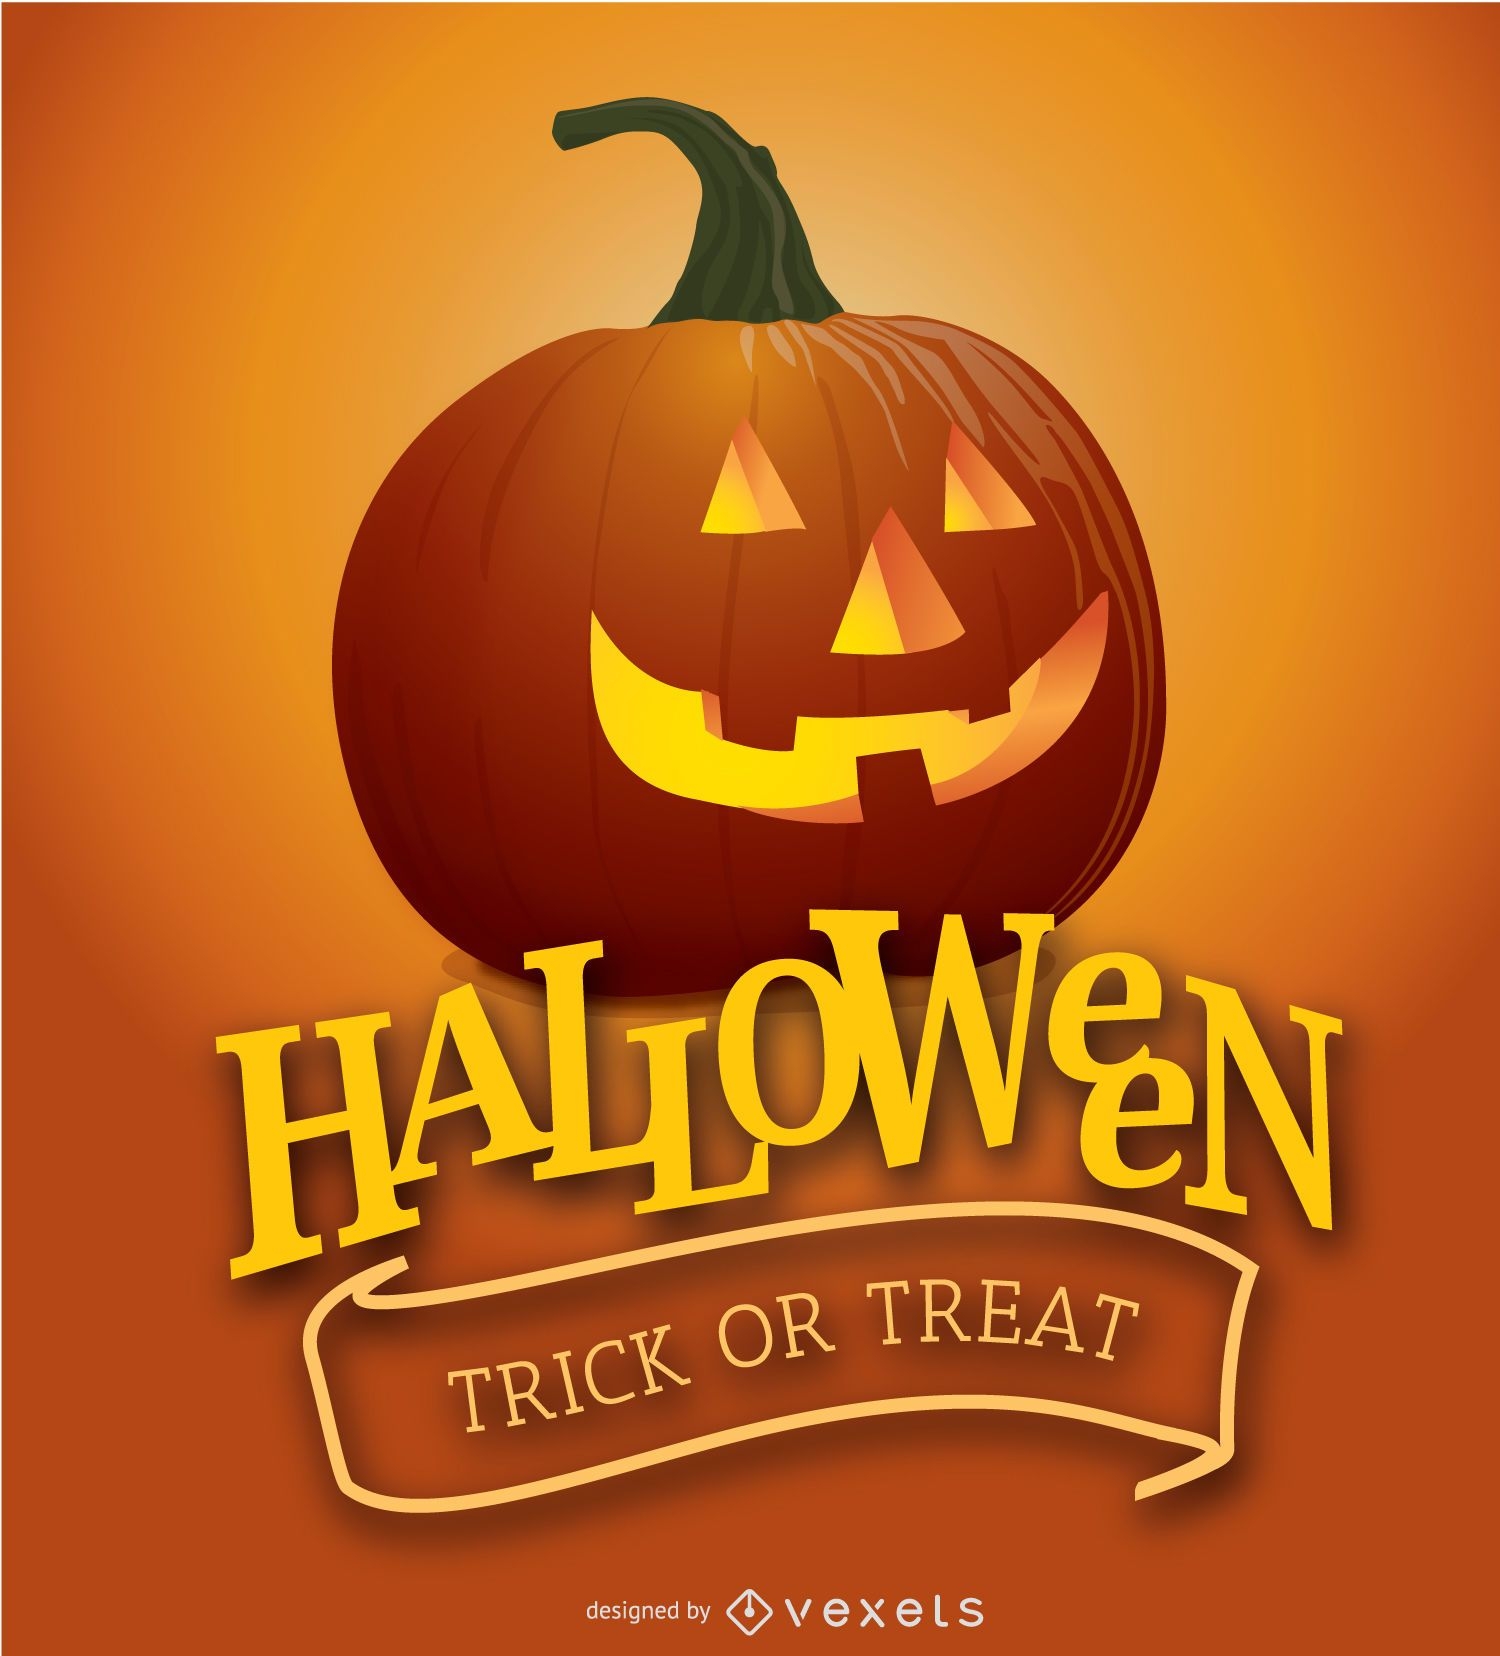 Halloween Pumpkin poster